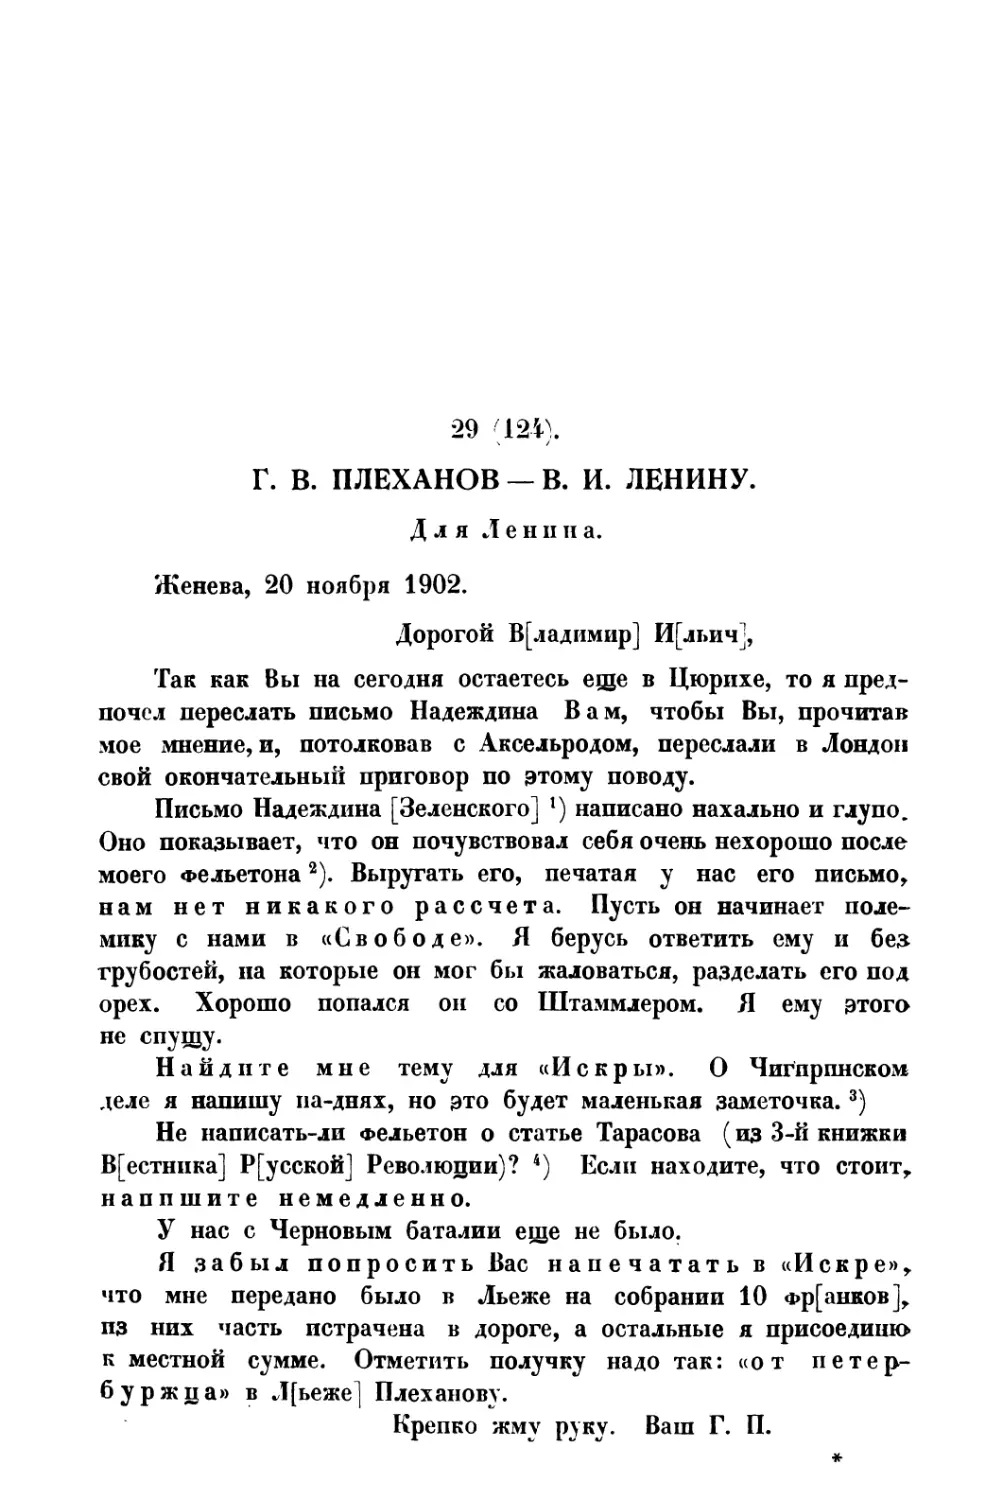 29. Г. В. Плеханов — В. И Ленину от 20 XI 1902 г